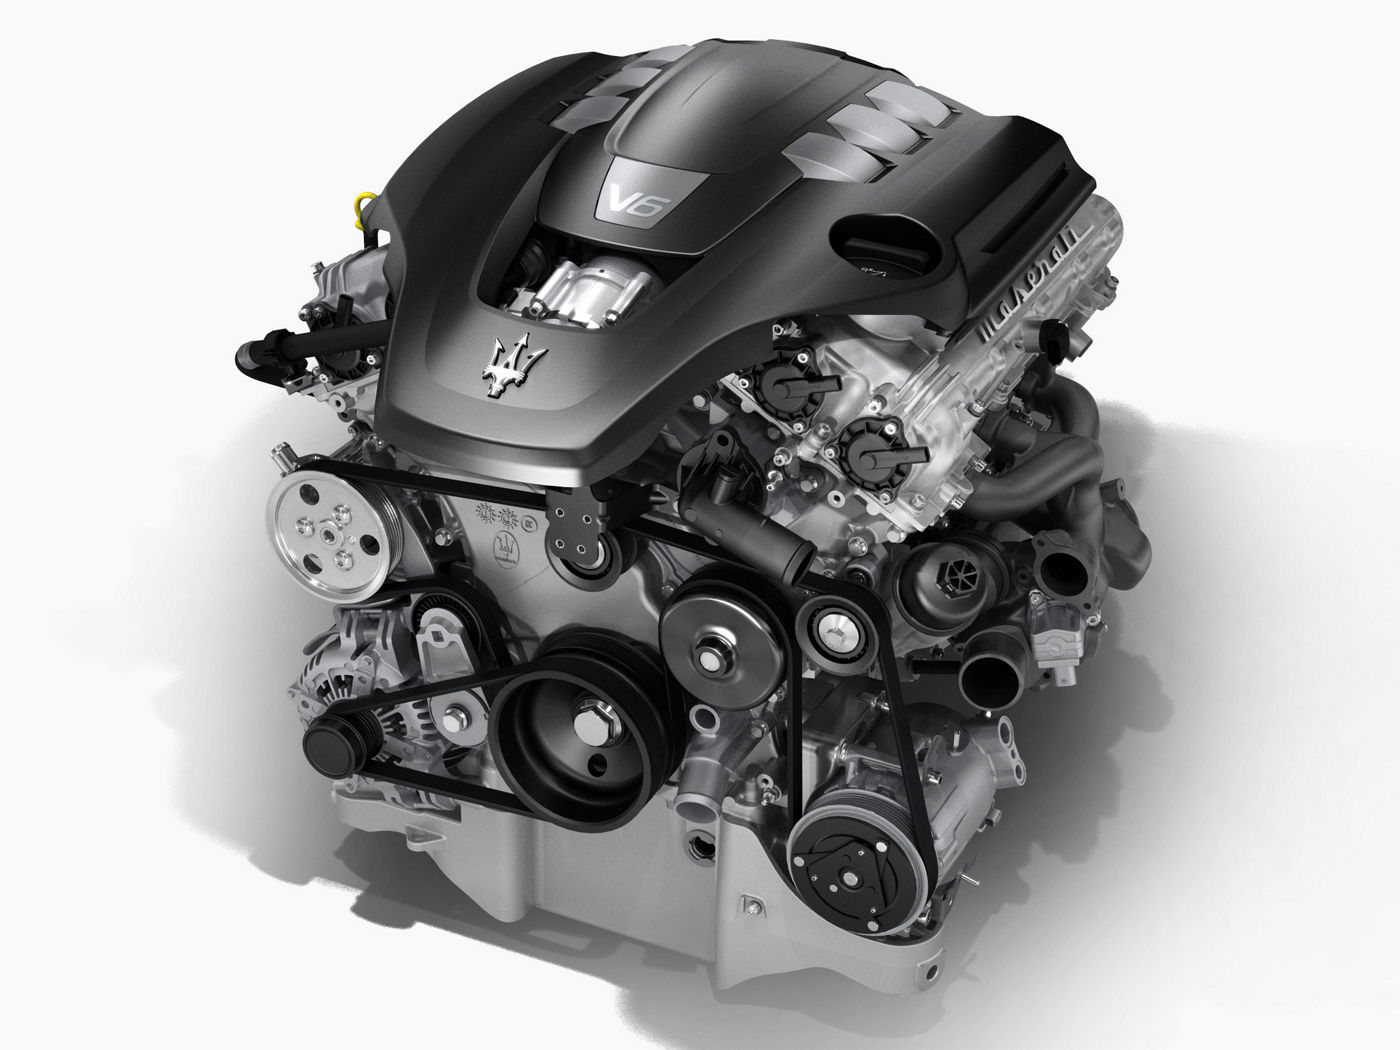 Maserati Quattroporte V6 engine - structure view